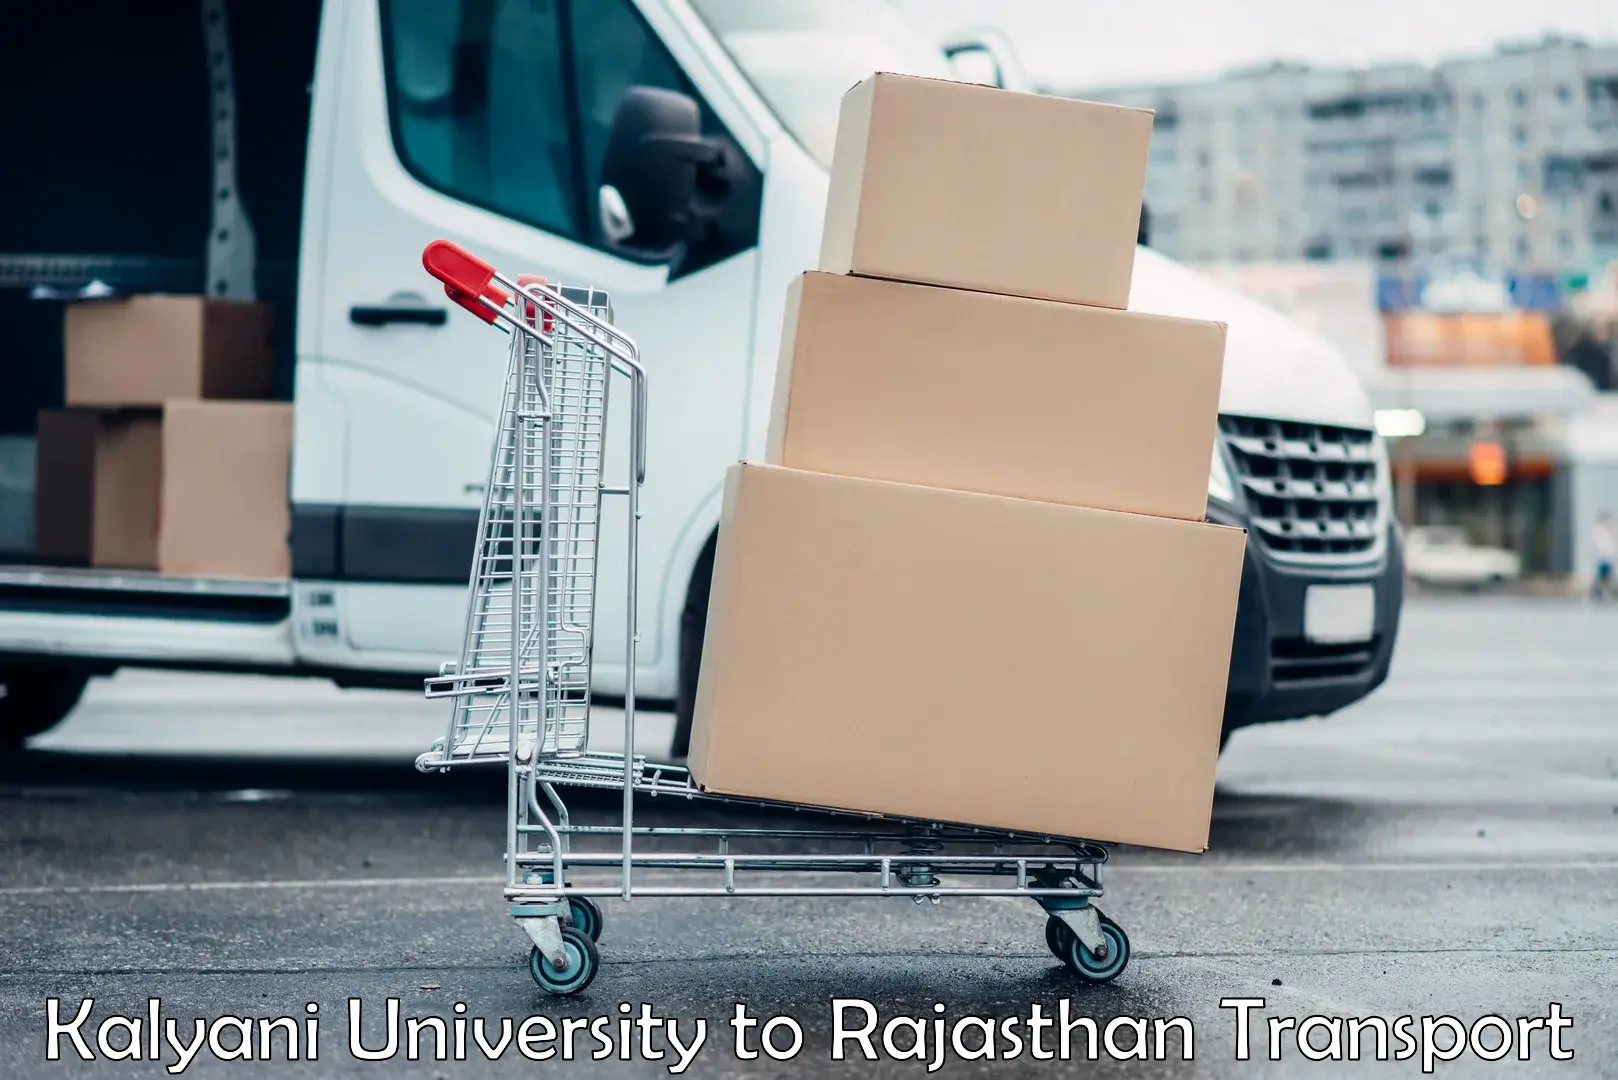 Goods delivery service Kalyani University to Bagru